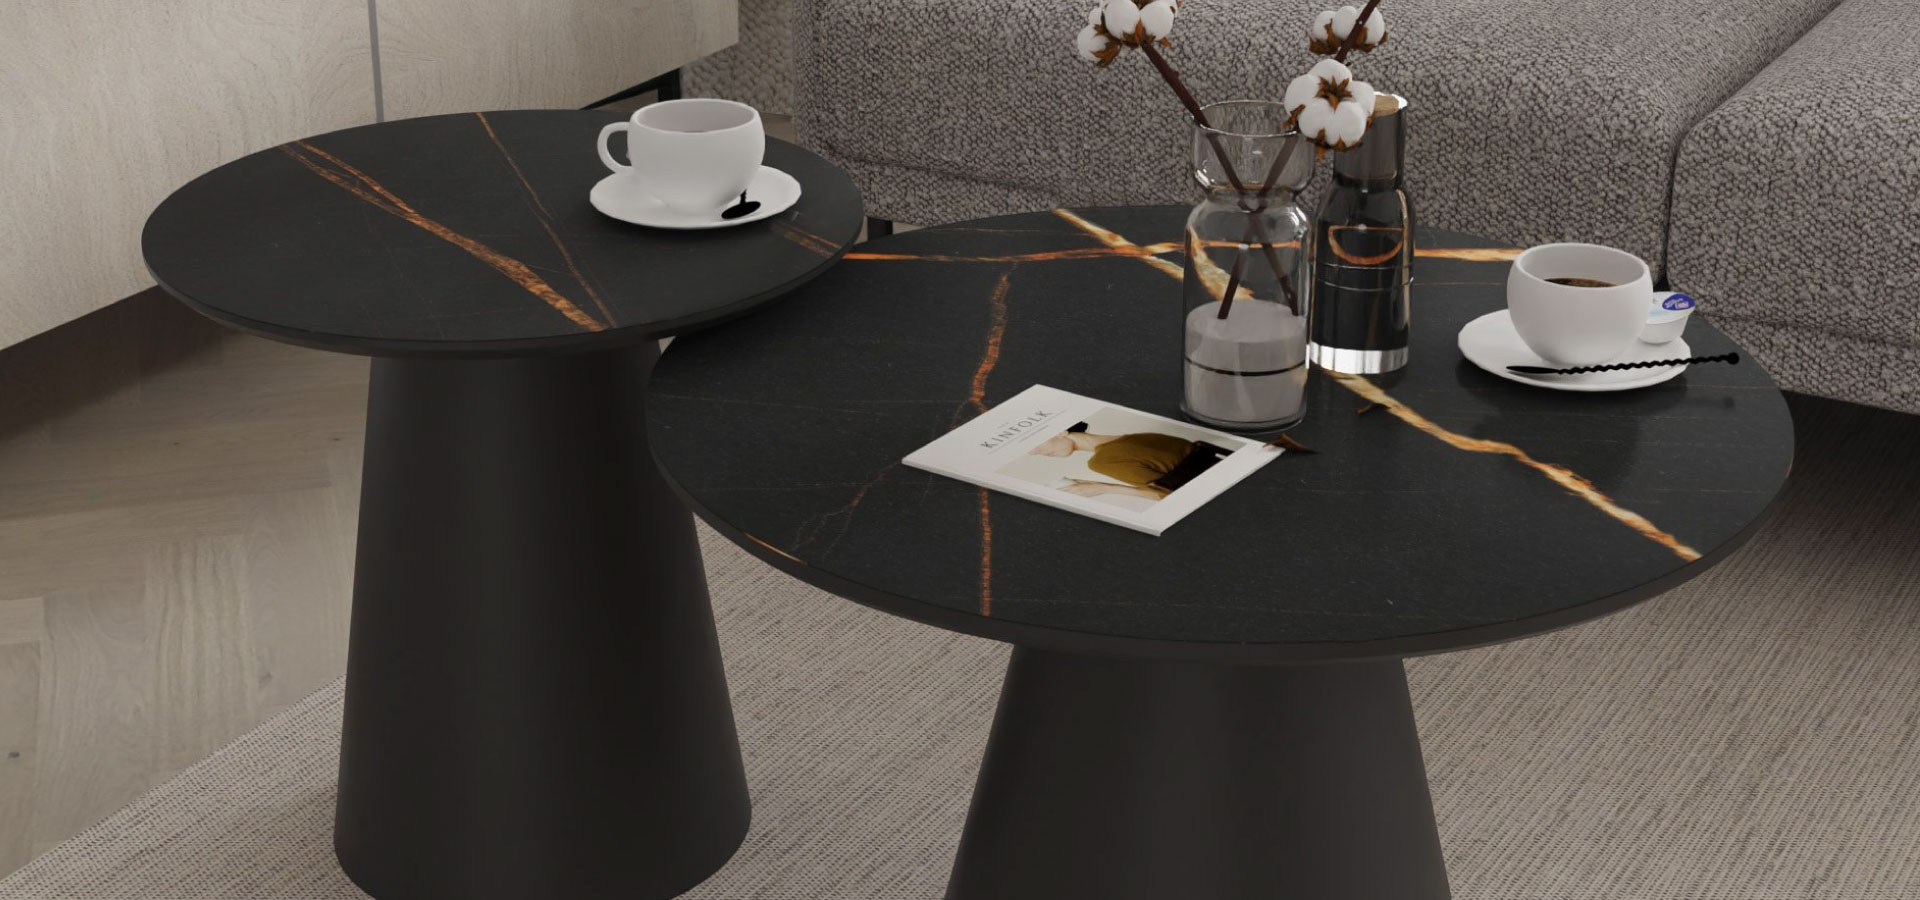 Czarny komplet stolików kawowych na stożkowych nogach i z czarnym blatem imitującym kamień.